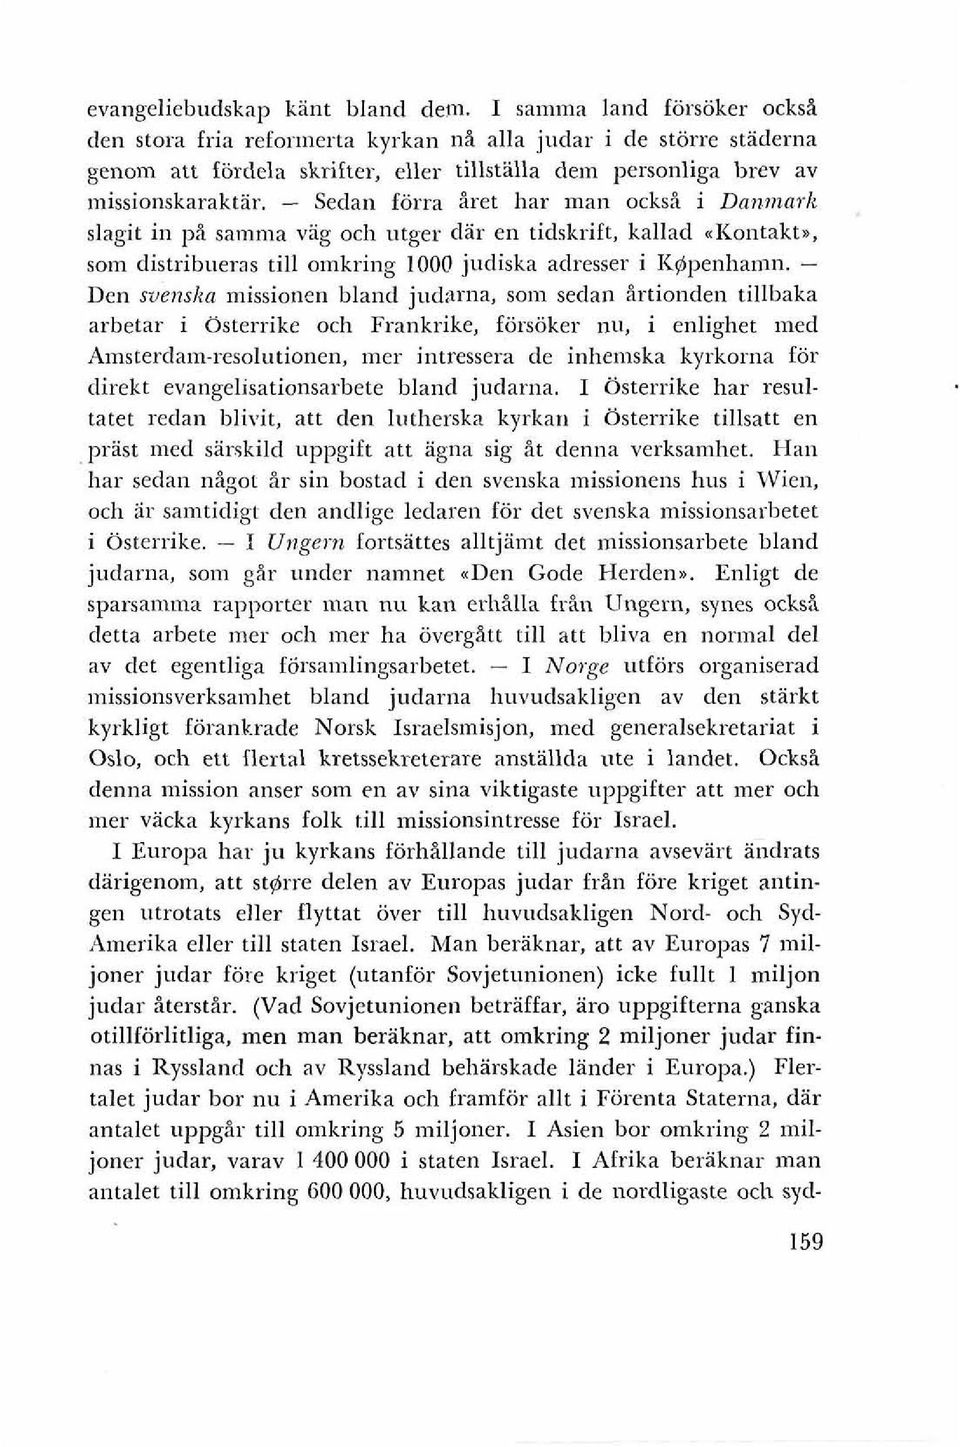 - Sedan forra Bret har man ocksi i Danmark slagit in pi samma vag och utger db en tidskrift, kallad ~Kontakt., som distribueras till omkring 1000 judiska adresser i K@penhamn.